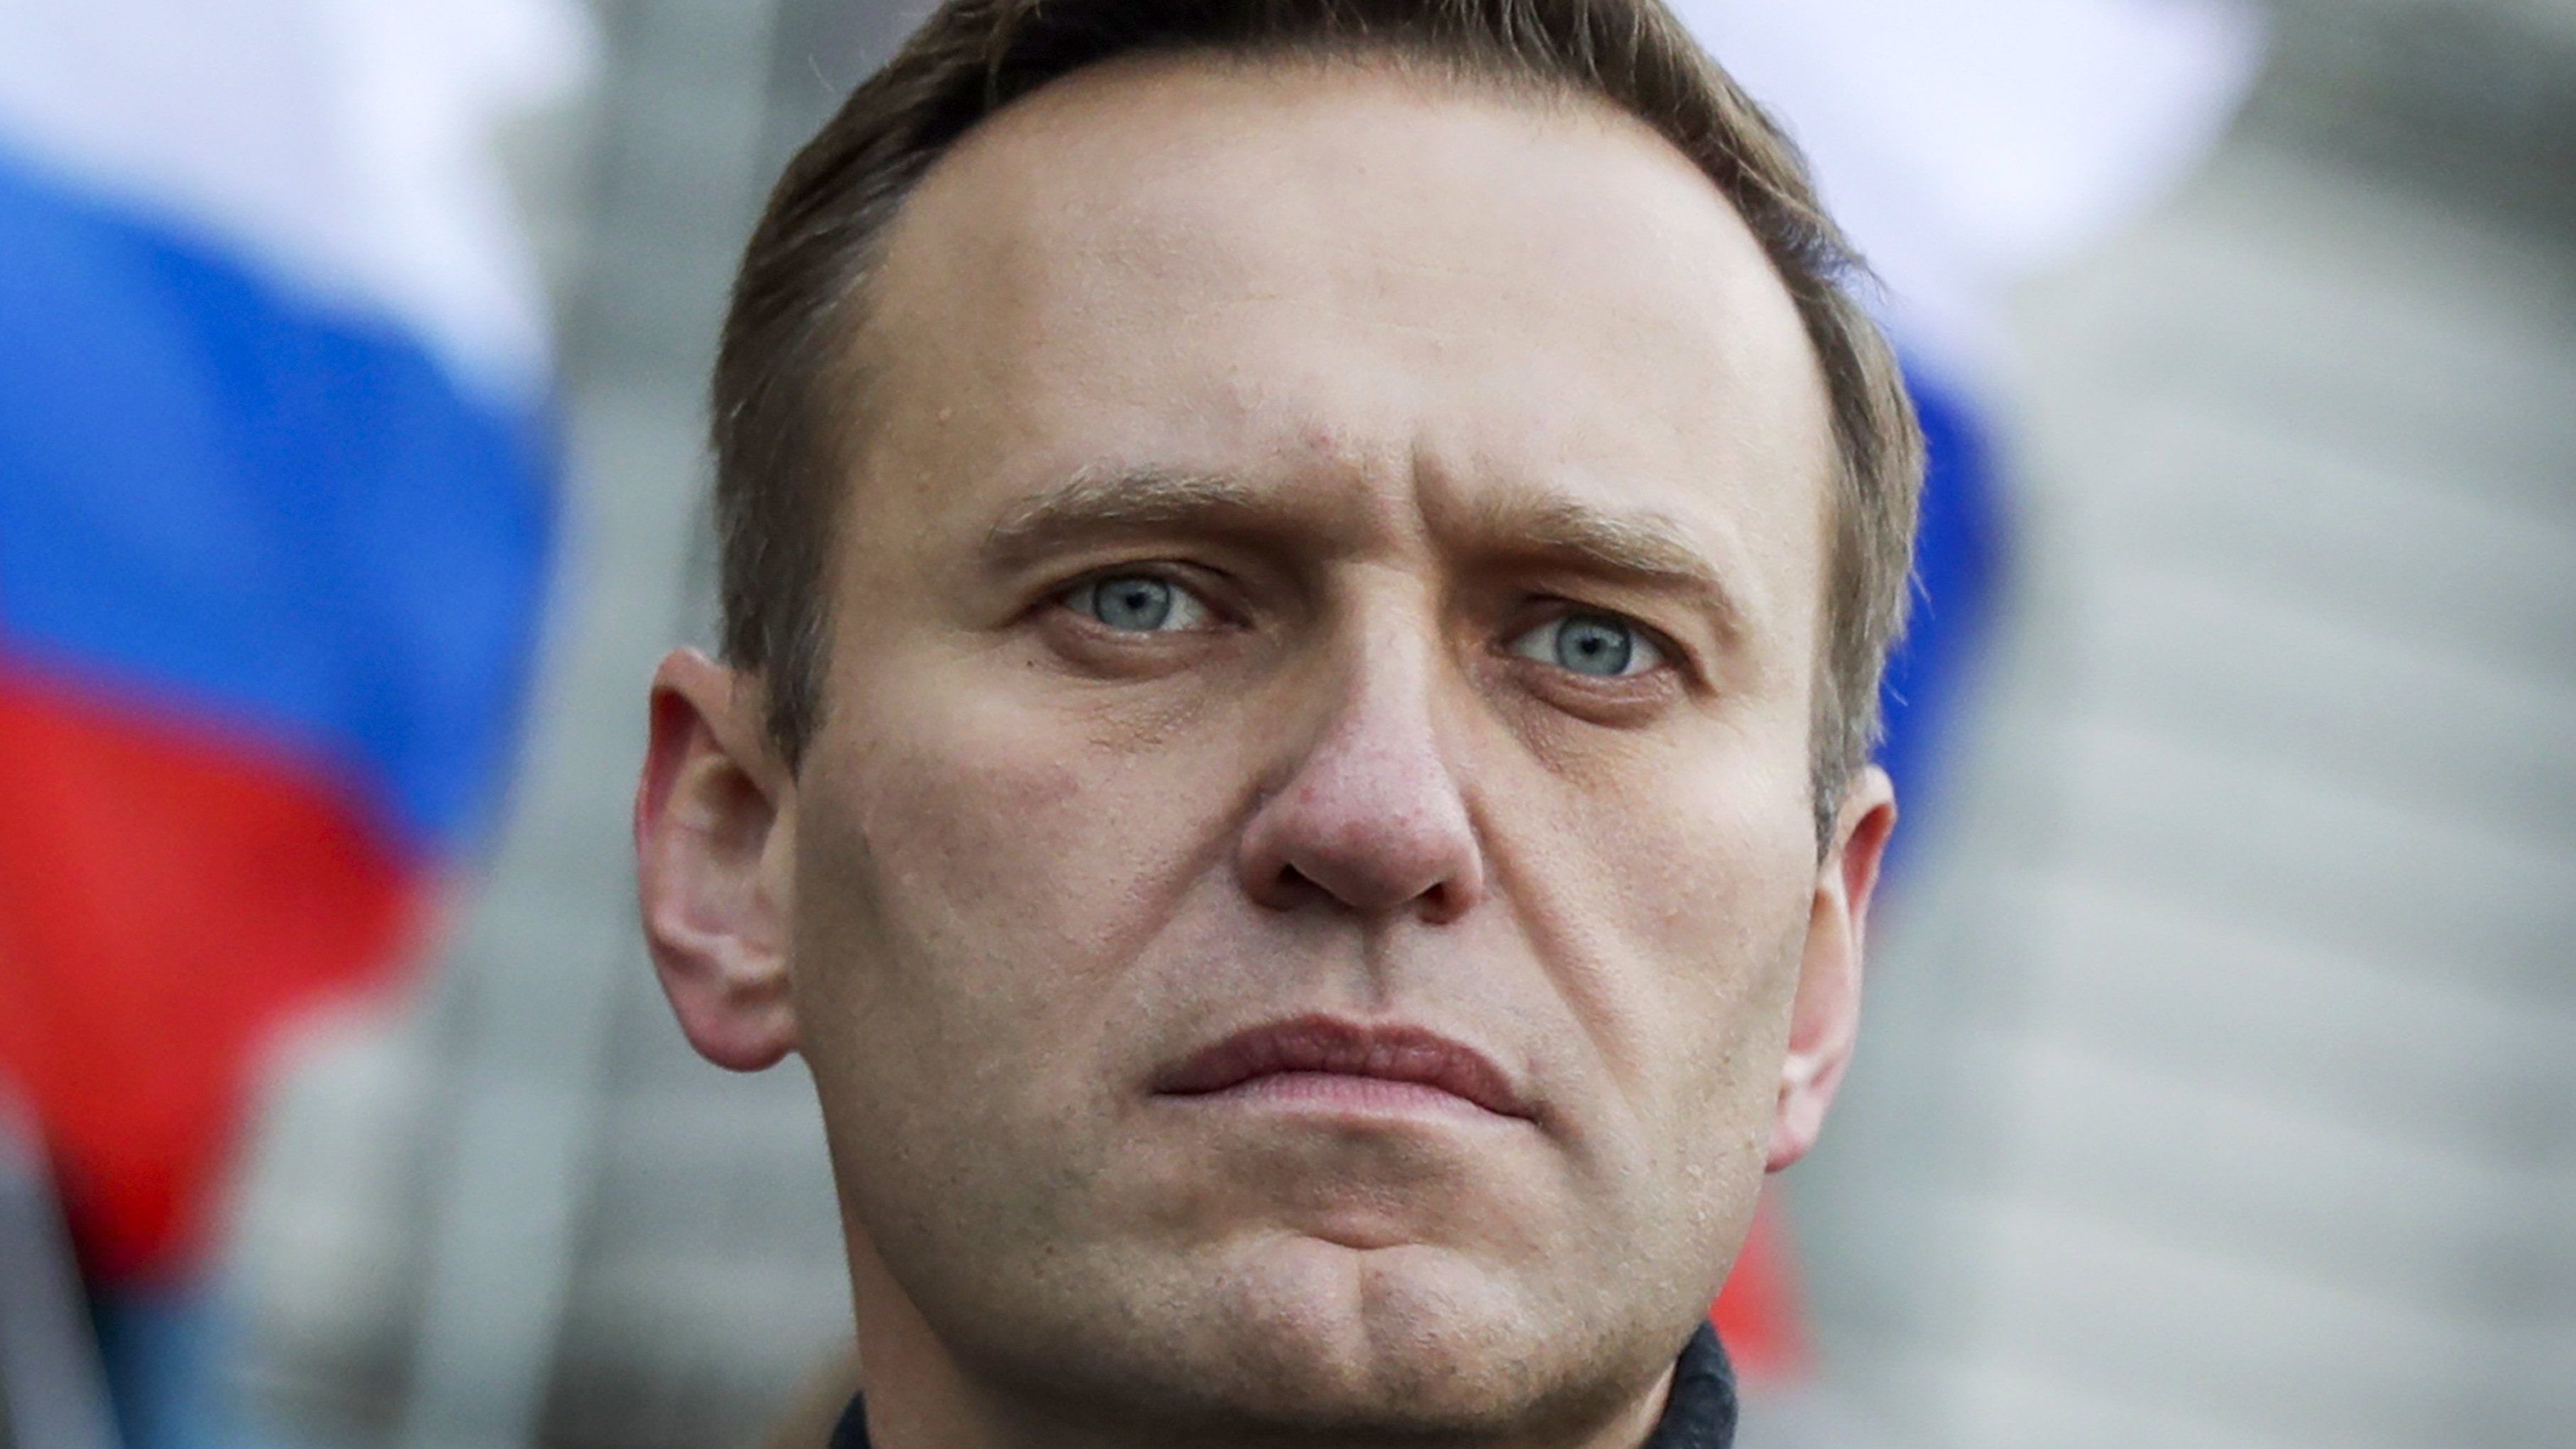 Orosz kémfőnök: Navalnijt nem mérgezhették novicsokkal, a készleteket megsemmisítették